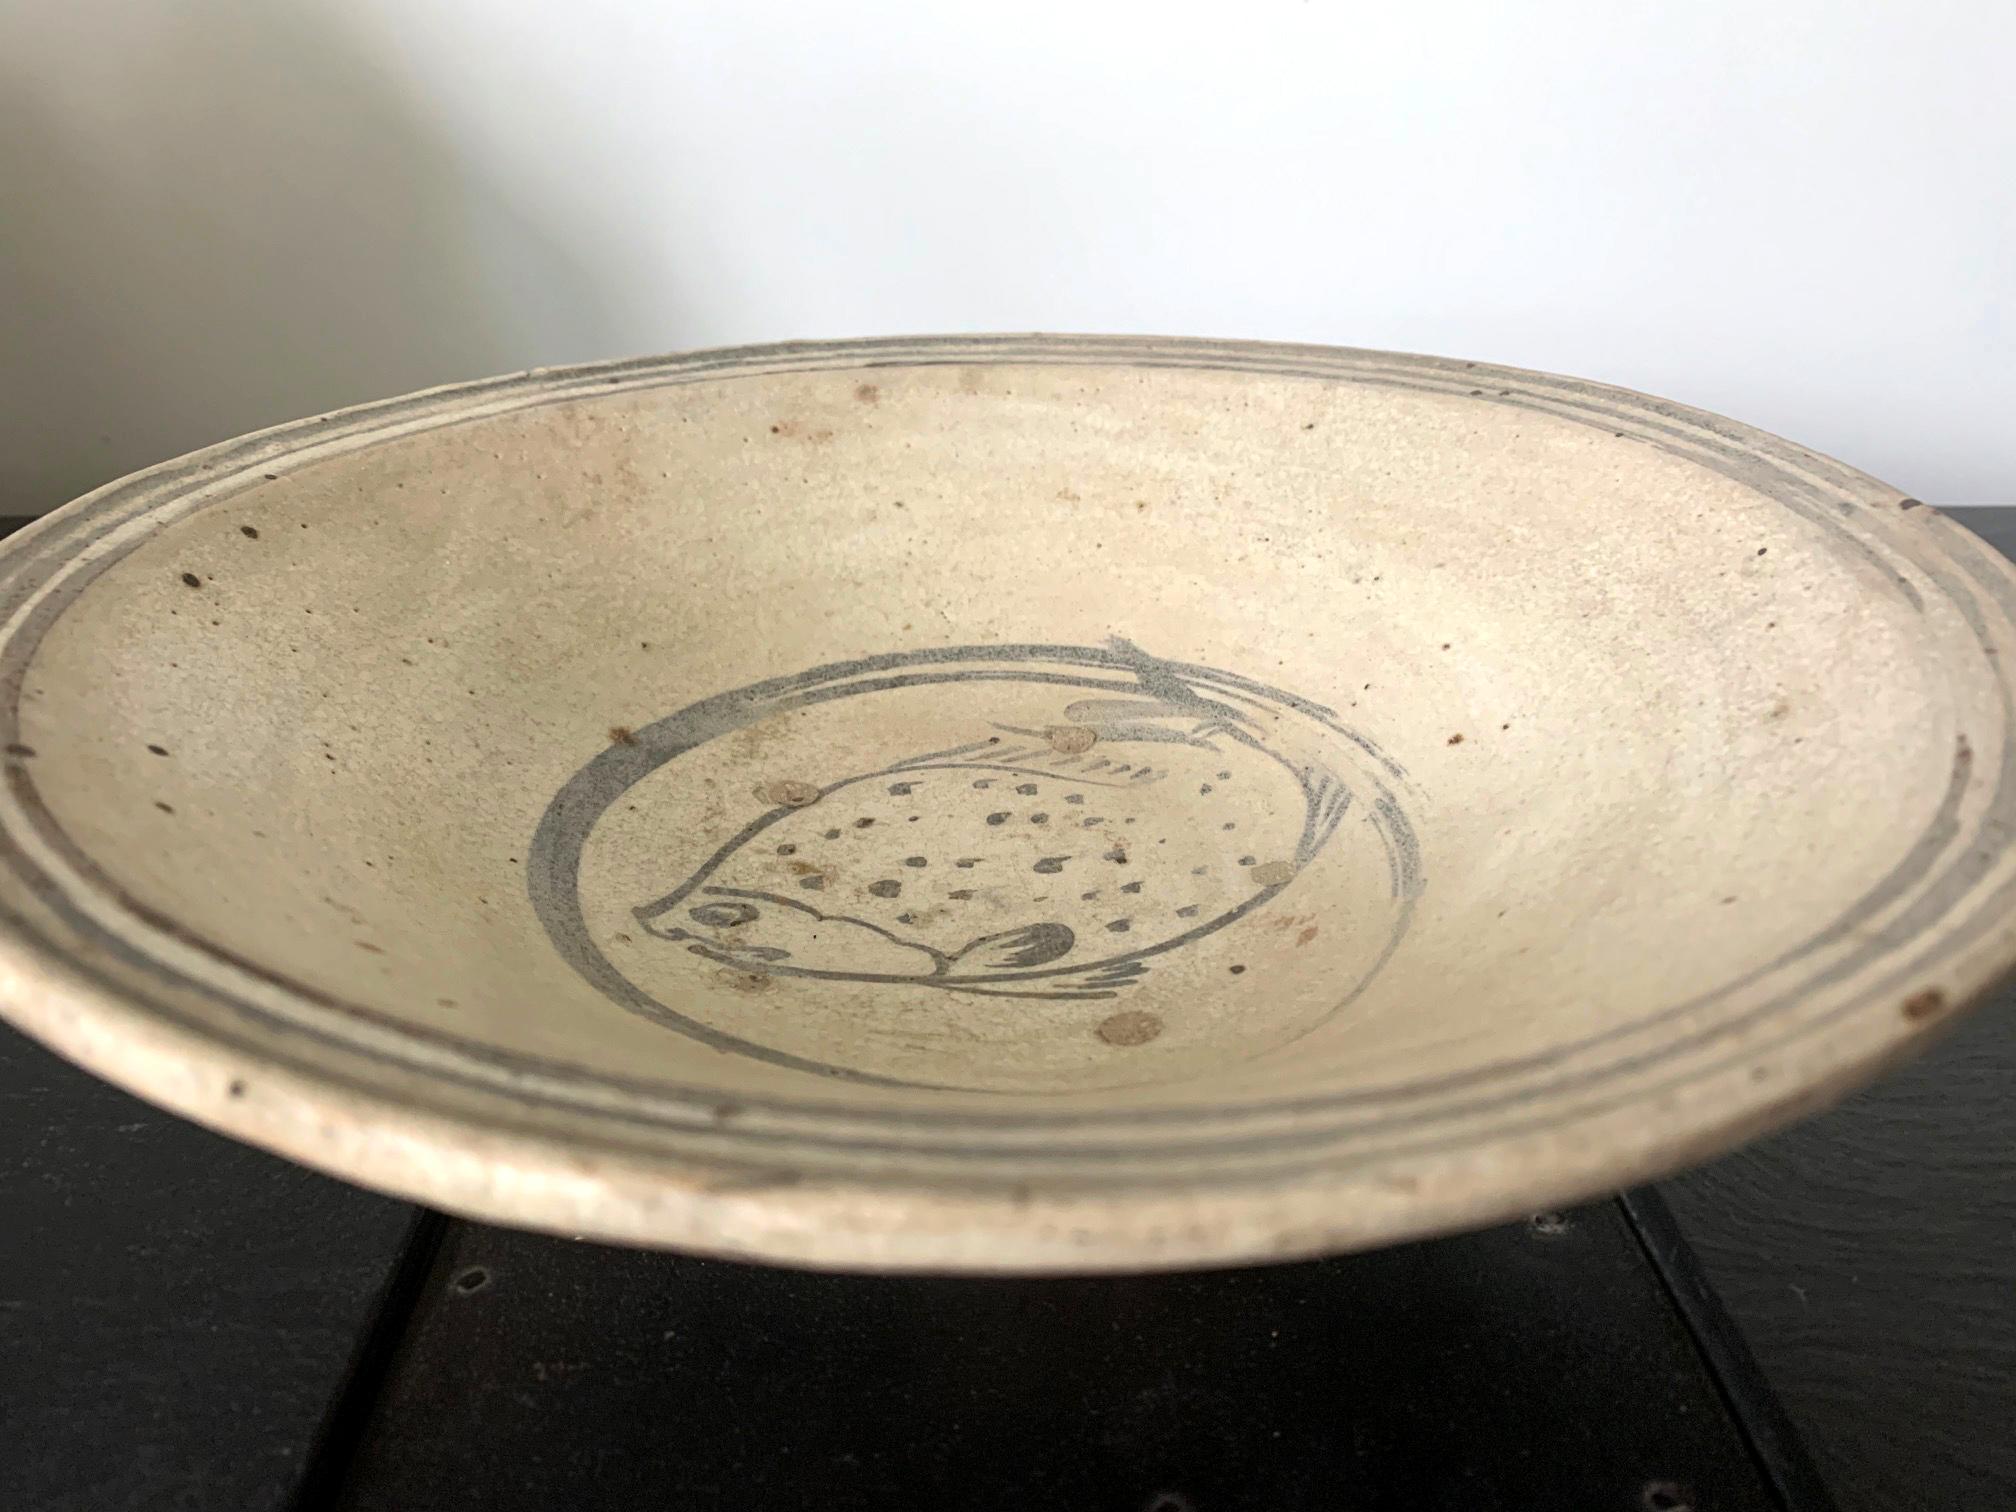 Bol en céramique peu profond datant de la période Sukhothai en Thaïlande, vers le 14e-15e siècle. Le plat a été moulé à la main avec une argile grossière rosâtre. Il présente une surface en engobe blanc et une décoration en bleu sous glaçure. Trois